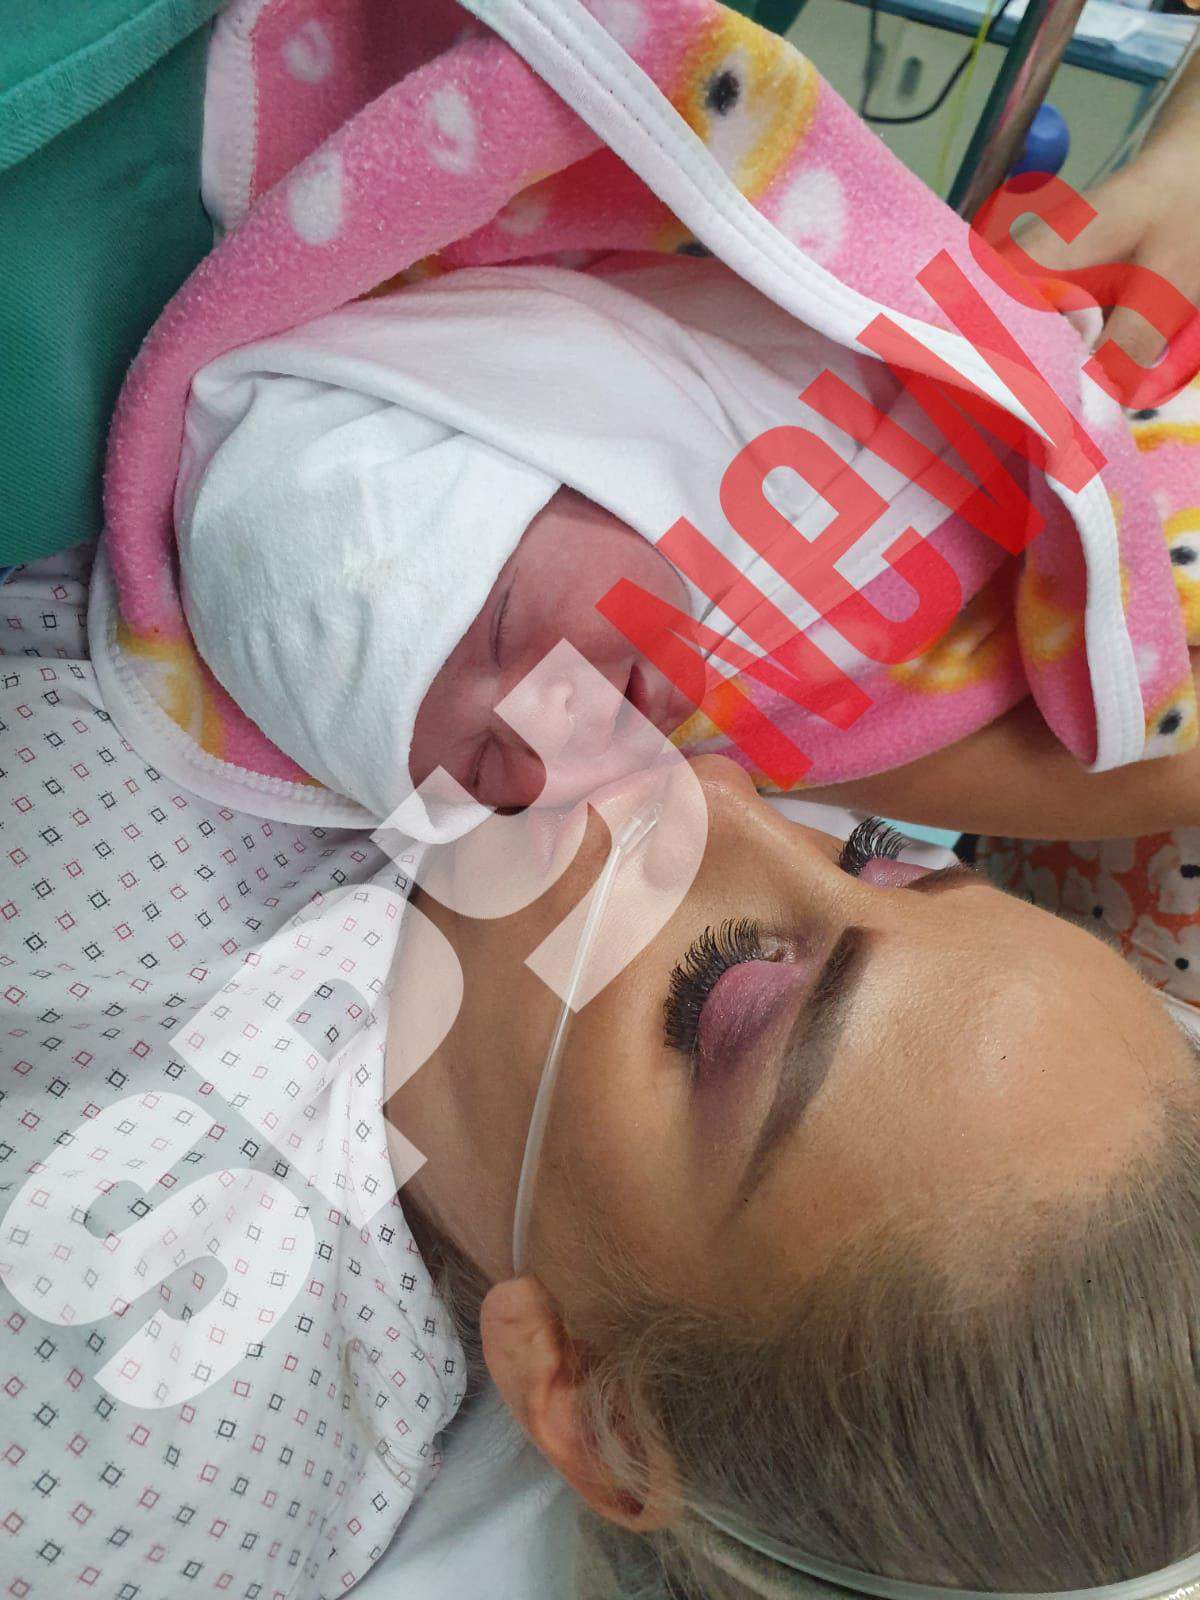 EXCLUSIV. Sânziana Buruiană a născut! Primele imagini cu fetița! Cum se simte vedeta după operație! / FOTO & VIDEO